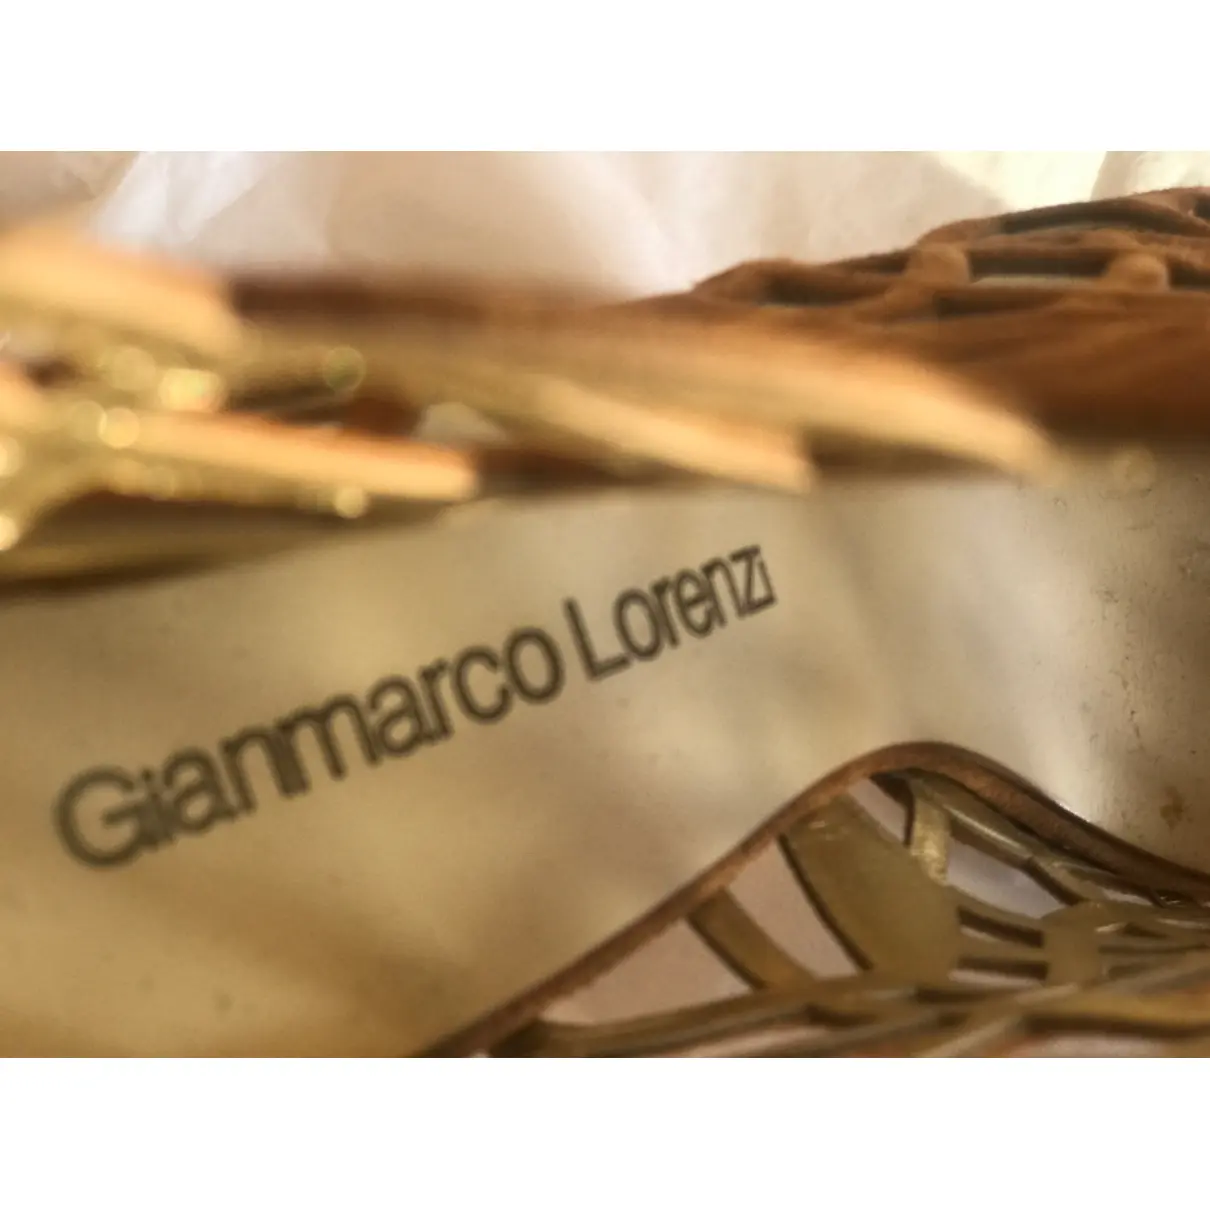 Sandals Gianmarco Lorenzi